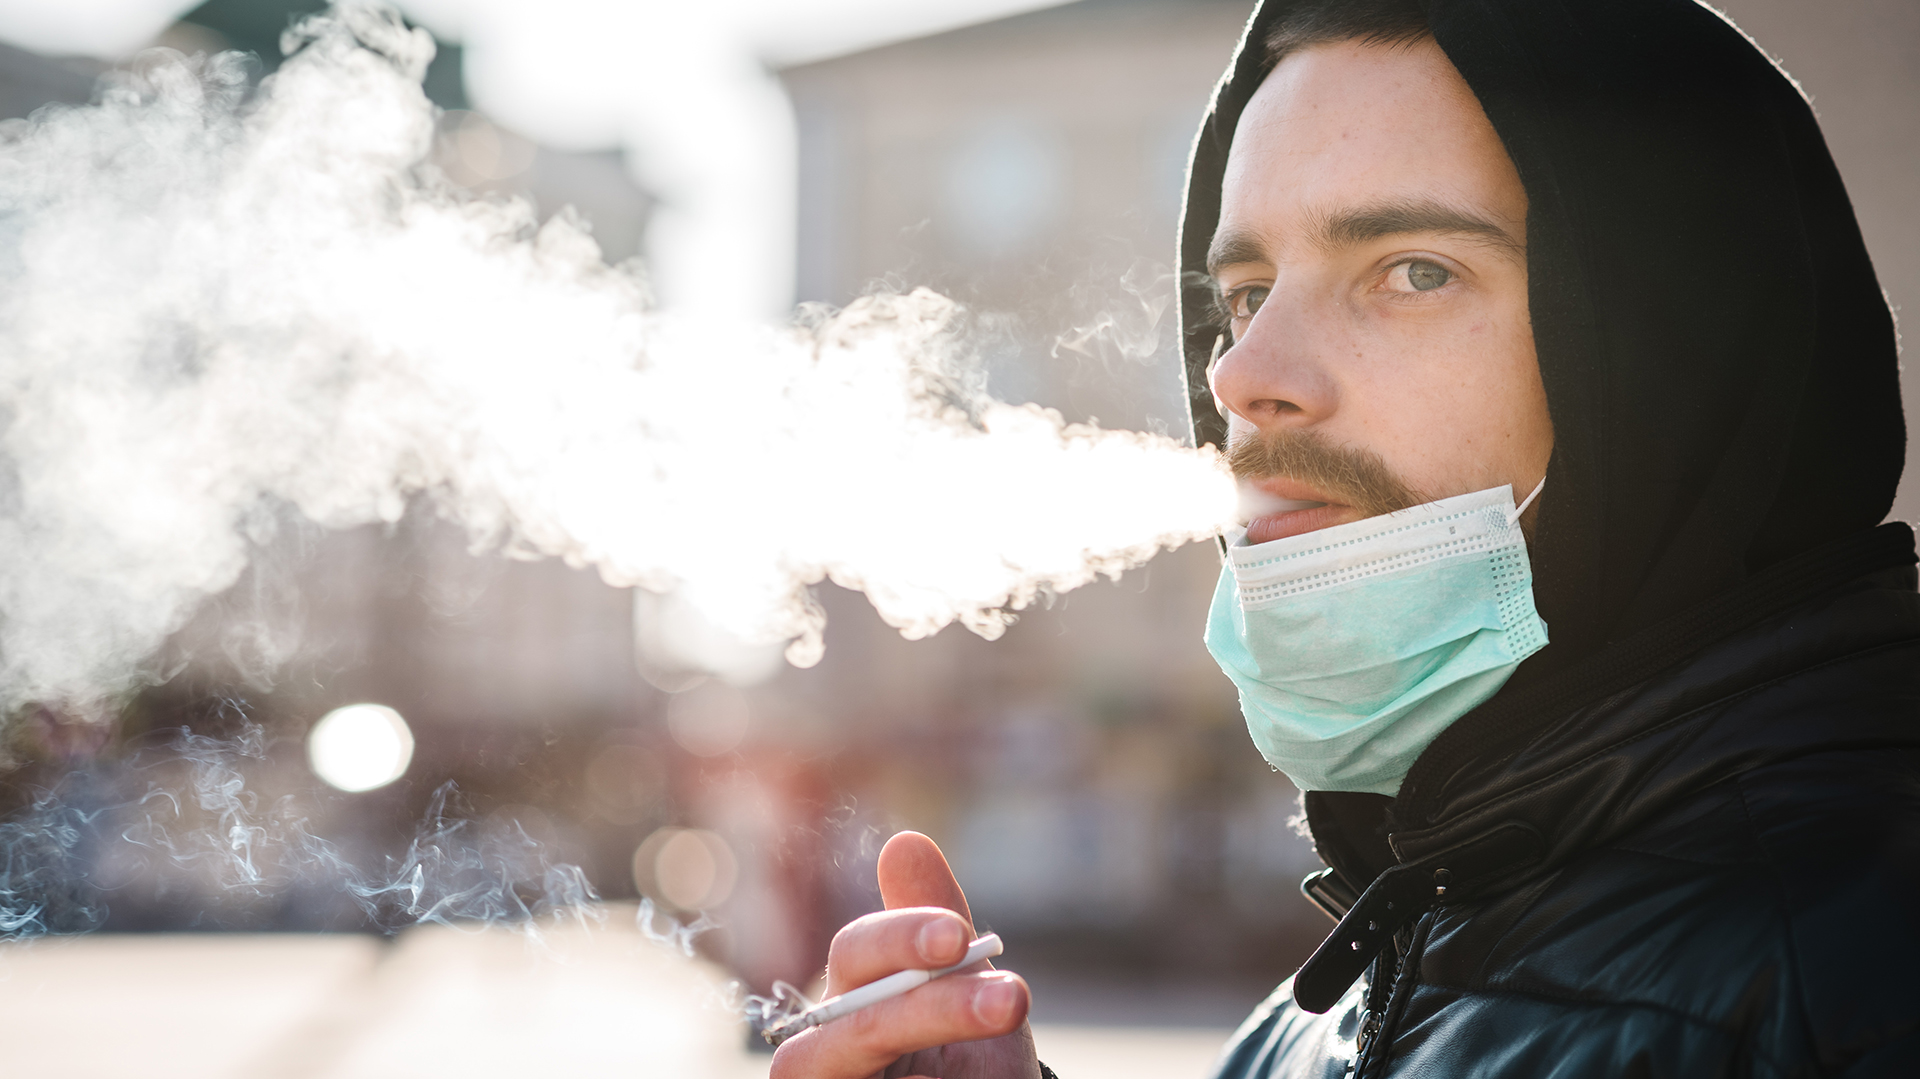 Los datos de investigación disponibles hasta la fecha parecen indicar que los fumadores tienen un mayor riesgo de desarrollar síntomas graves y de fallecer a causa de la COVID-19 (Shutterstock.com)